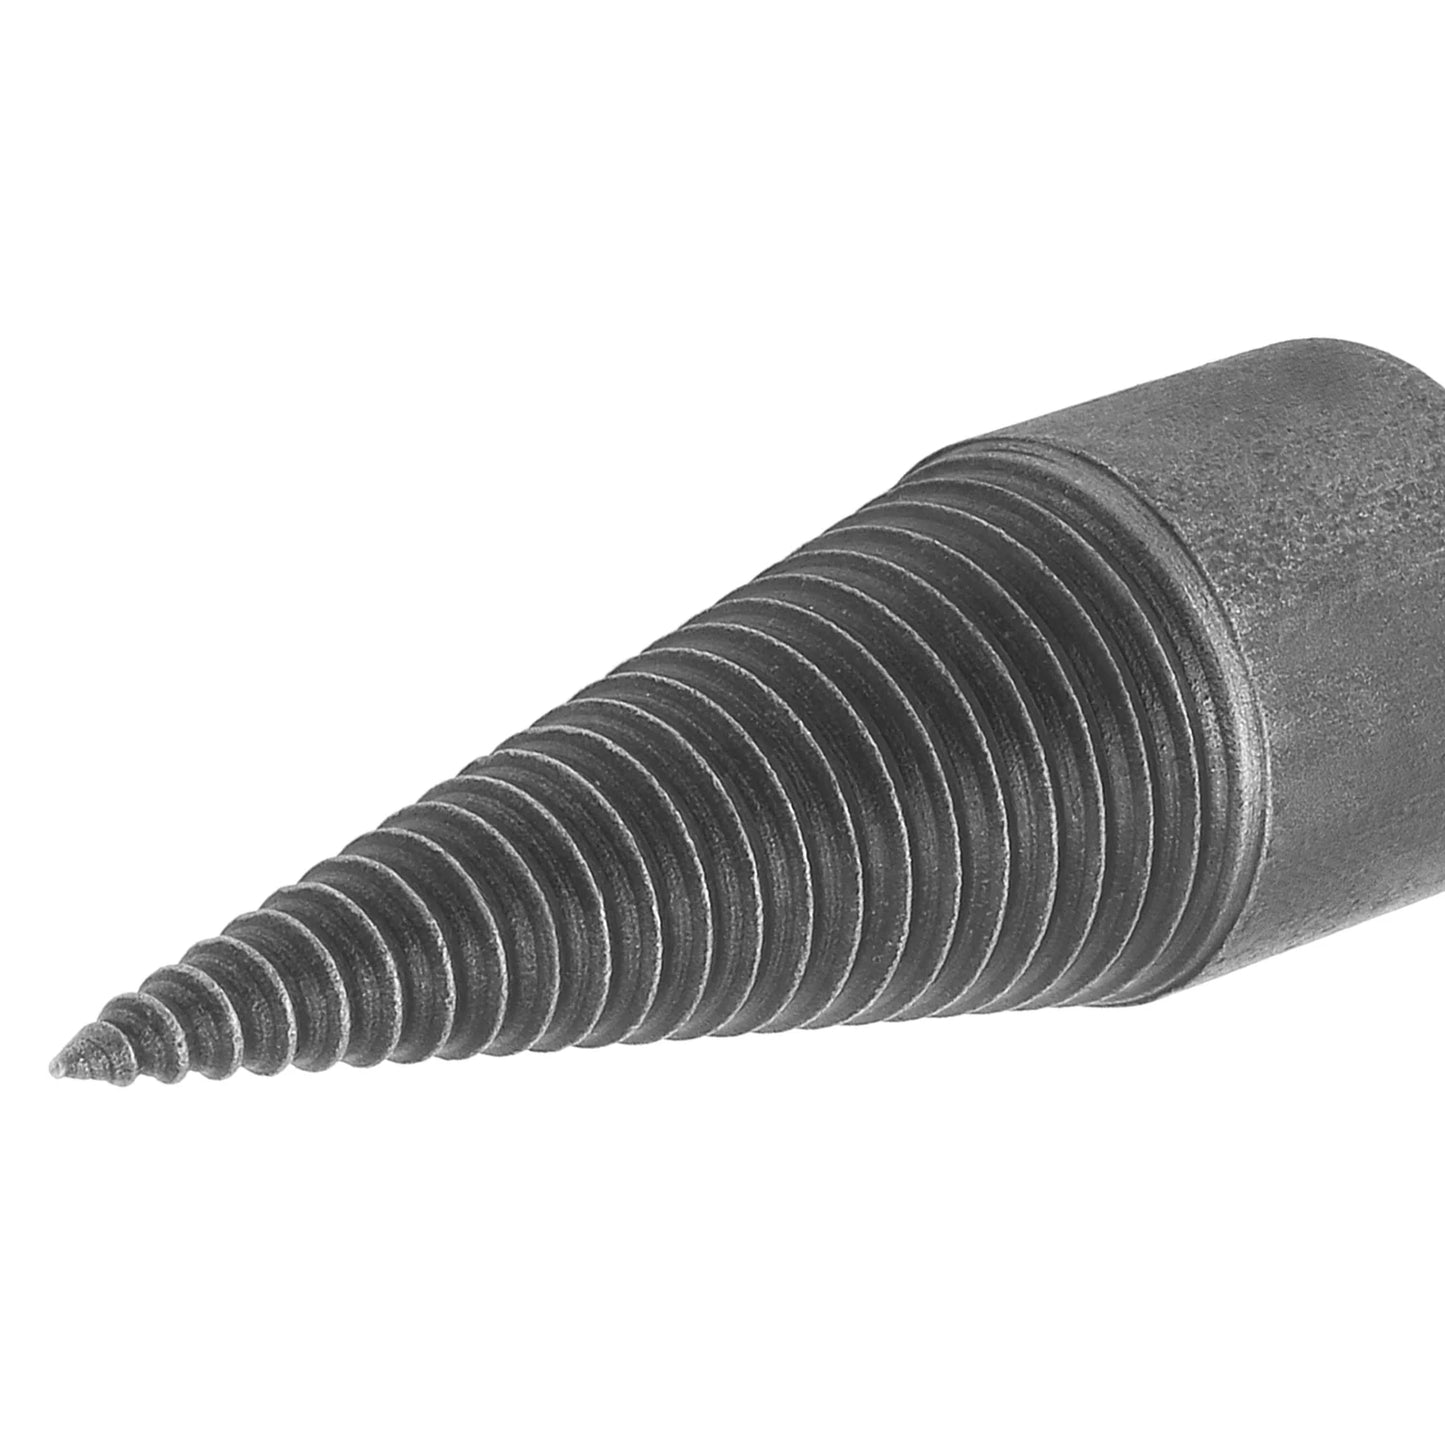 Step Drill Bit 30MM Carbon Steel Speedy Screw Cones Drill Bit